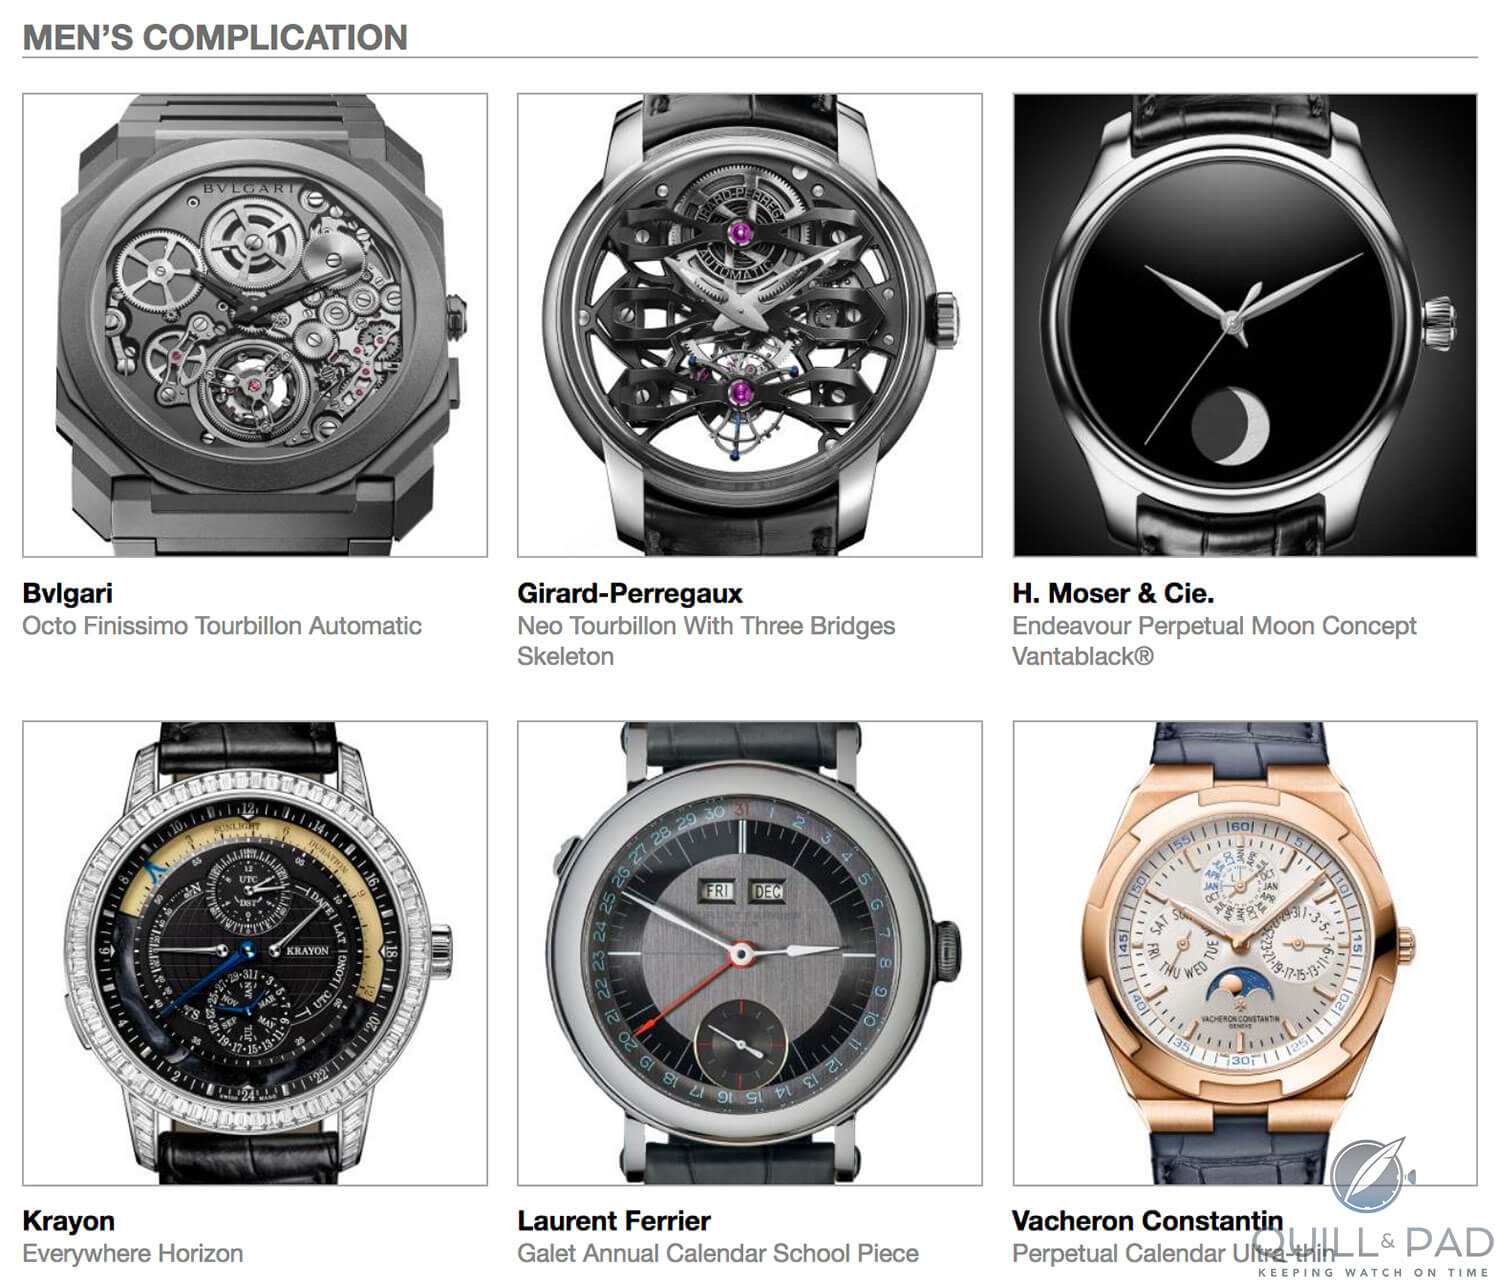 Men's Complication category pre-selected watches for the 2018 Grand Prix d’Horlogerie de Genève